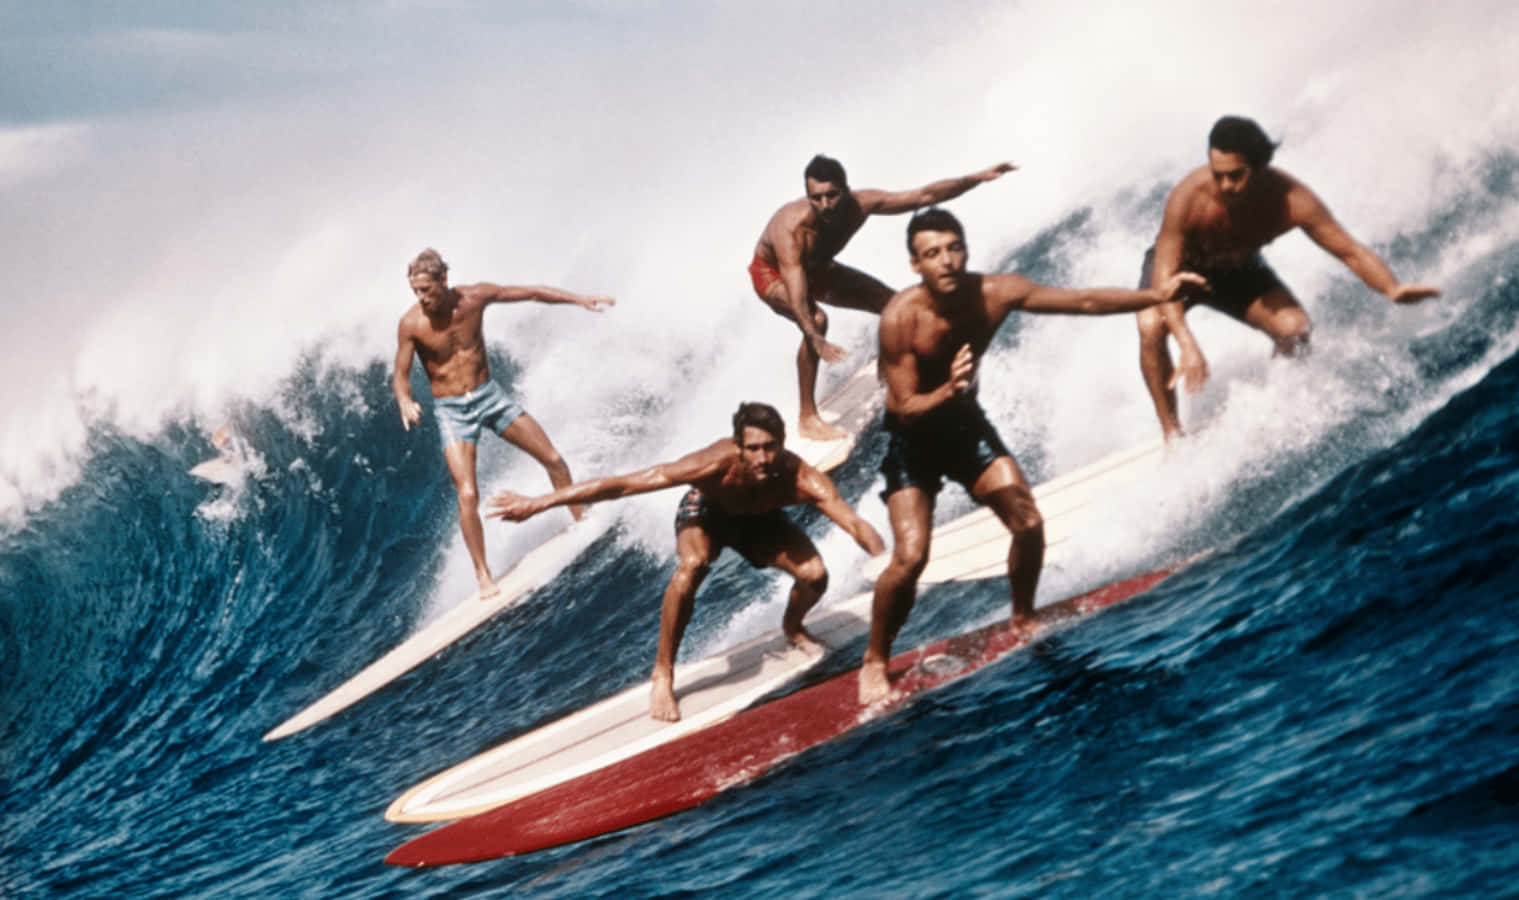 Umgrupo De Surfistas Surfando Uma Onda Em Pranchas De Surf. Papel de Parede